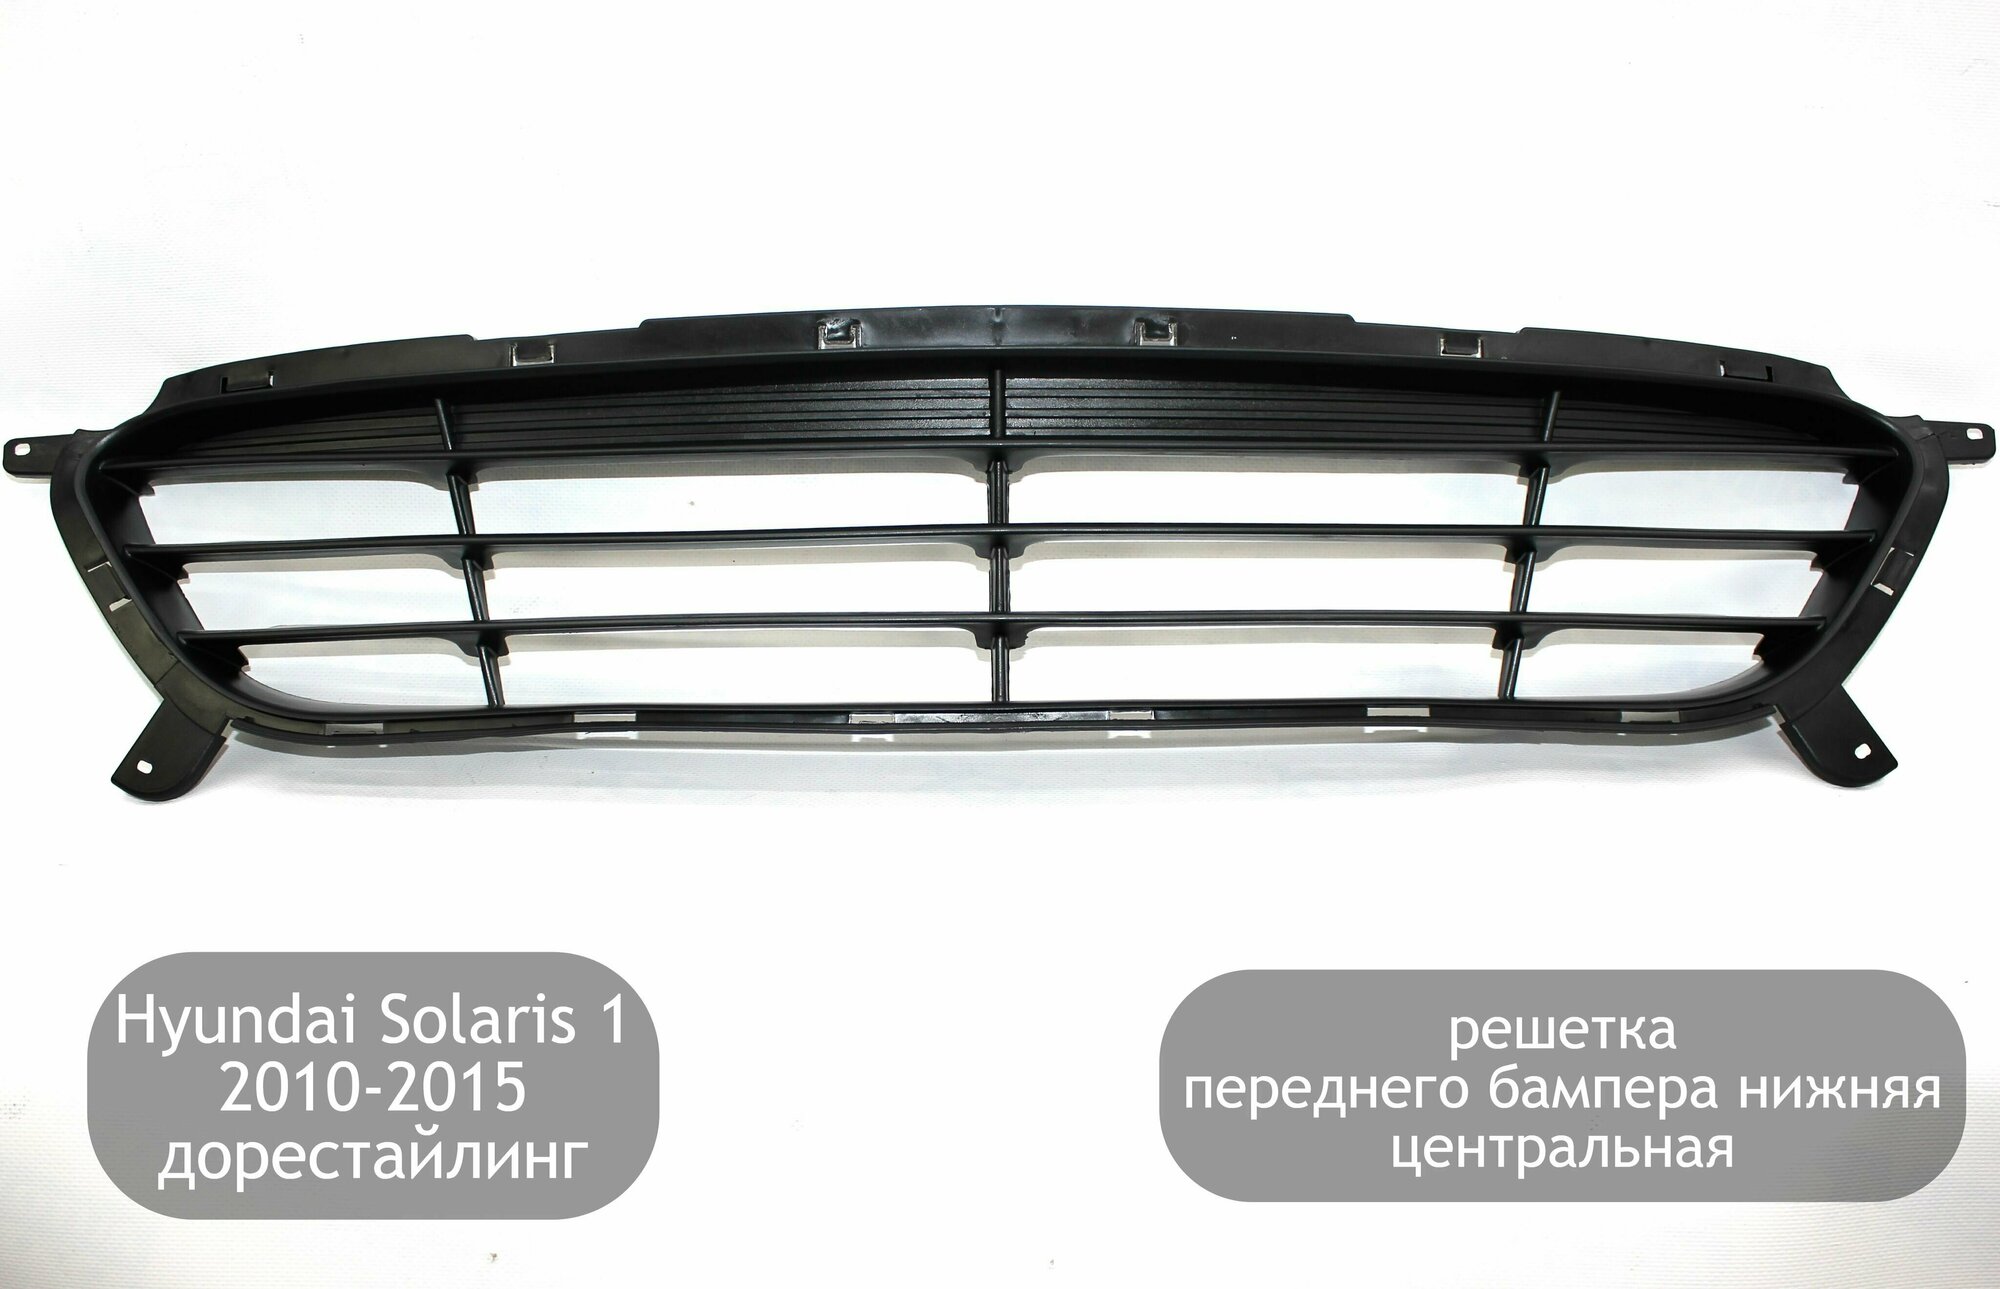 Решетка переднего бампера нижняя центральная для Hyundai Solaris 1 2010-2015 (дорестайлинг)